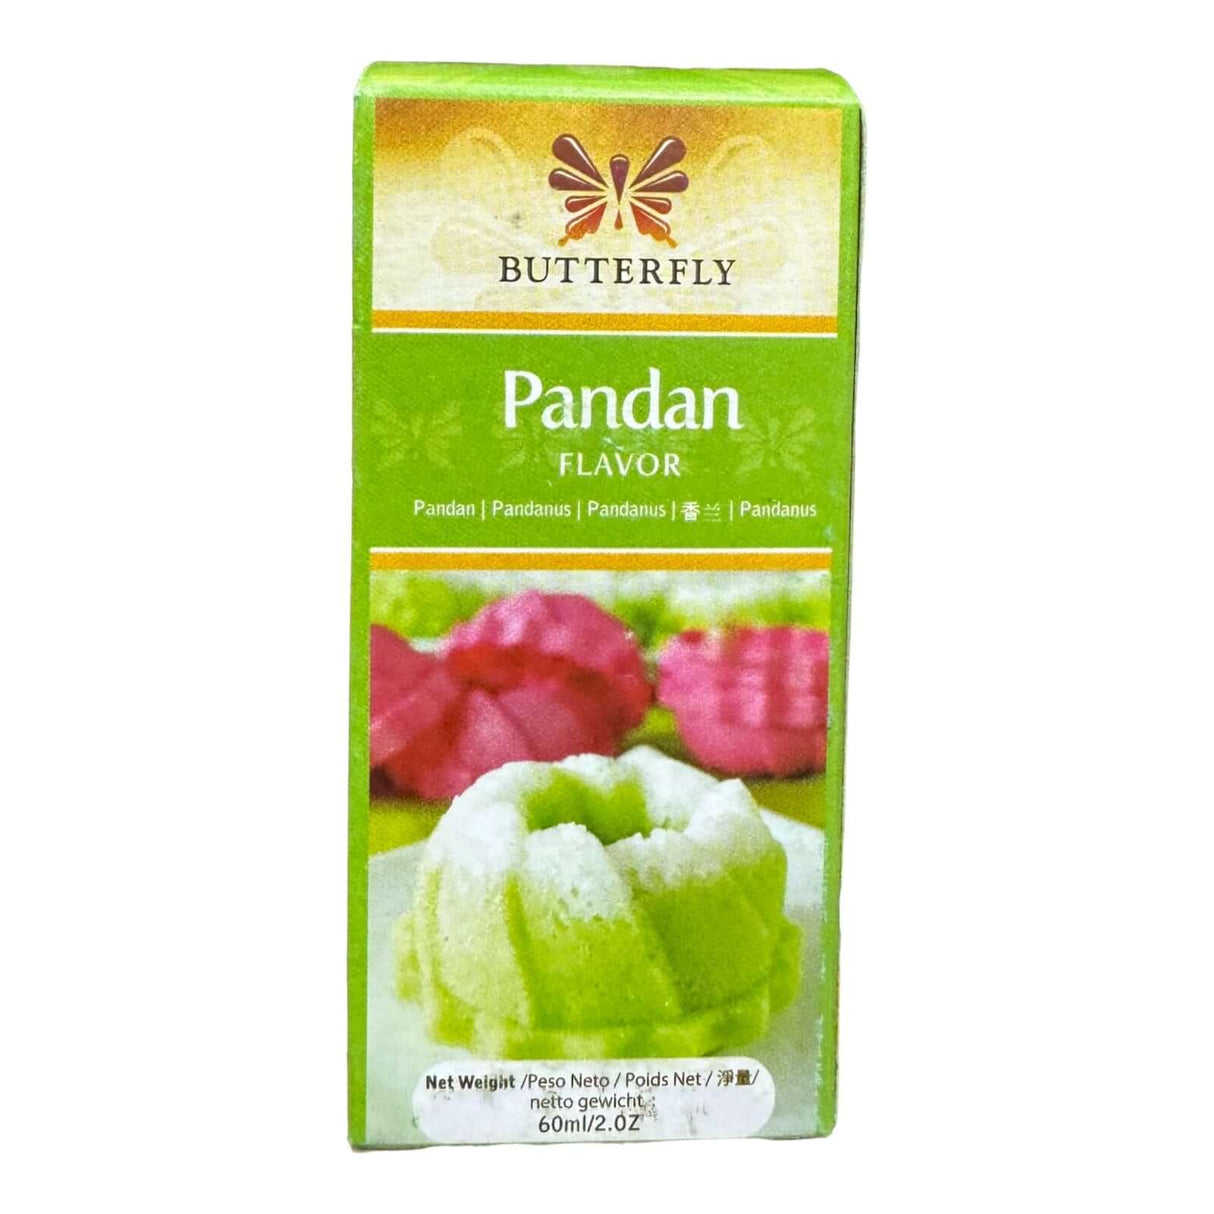 Butterfly Pandan Flavor